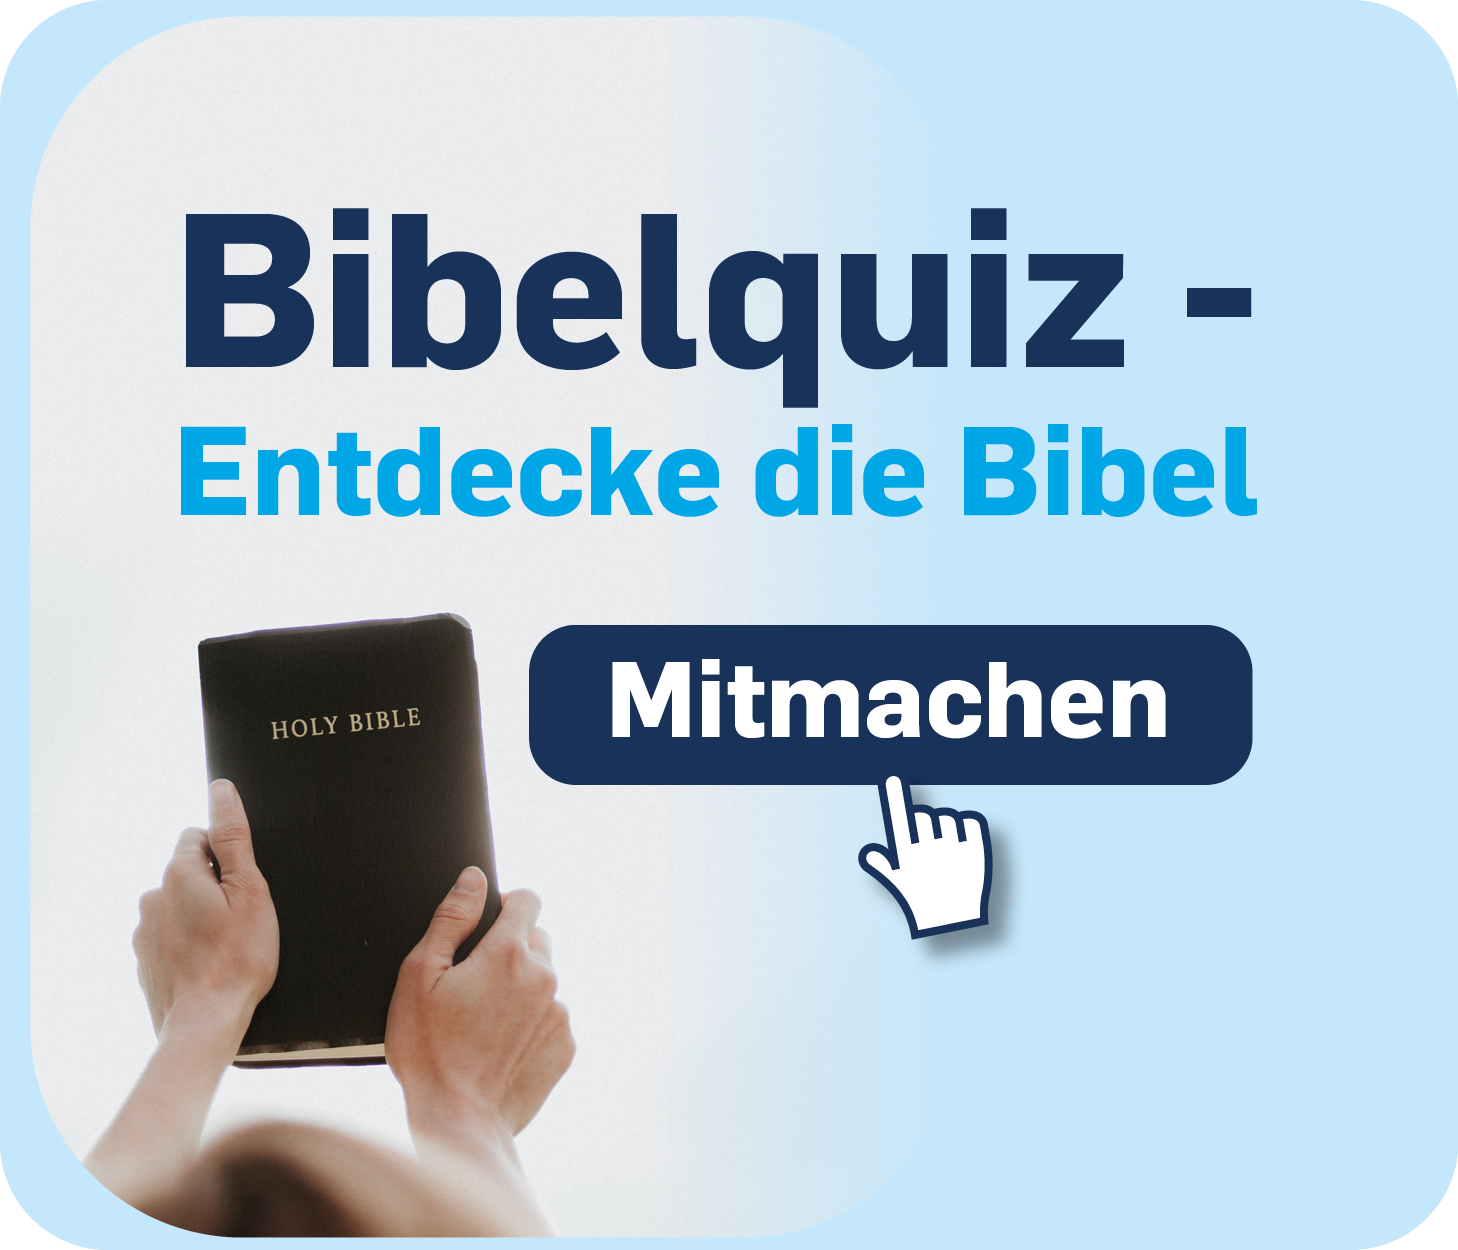 Bibelquiz Link